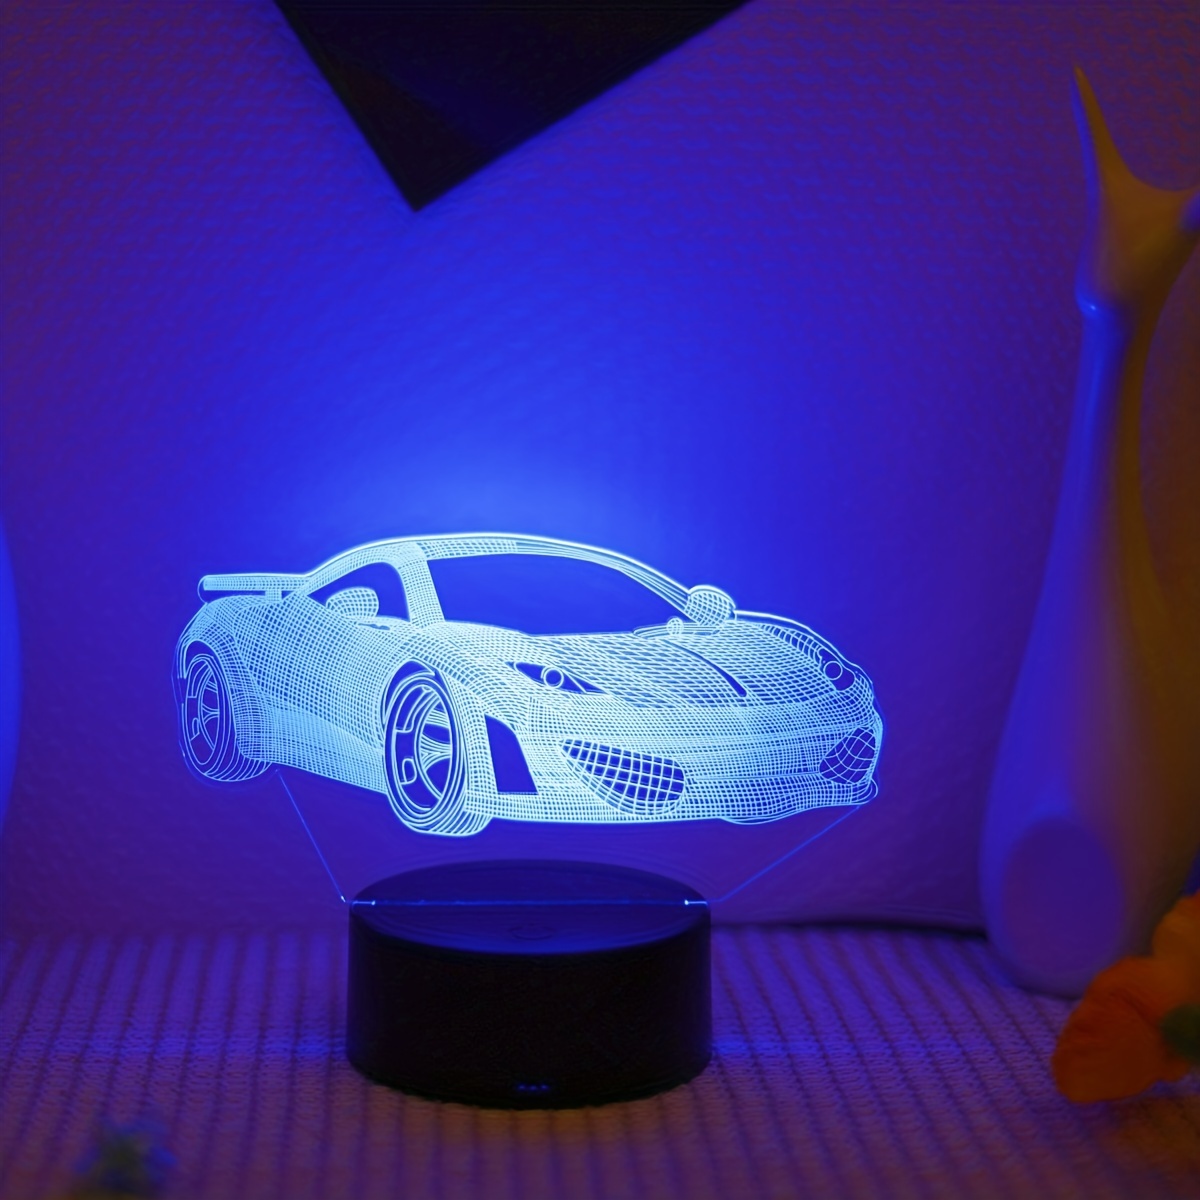 3D voiture de sport LED Lampe d'illusion Optique Lampe Lumière de